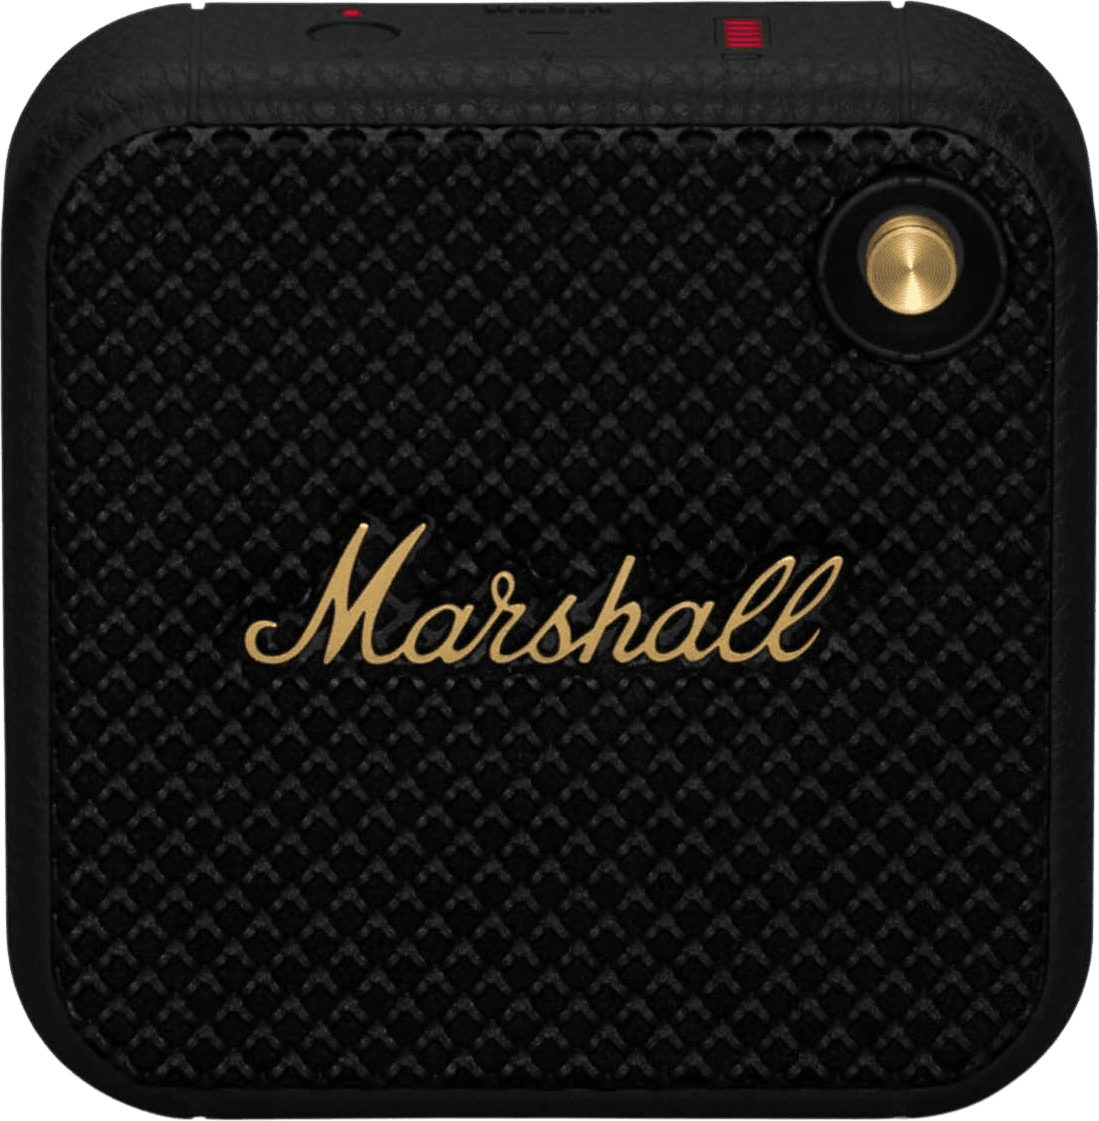 Schwarz Marshall Willen Bluetooth Speaker.2